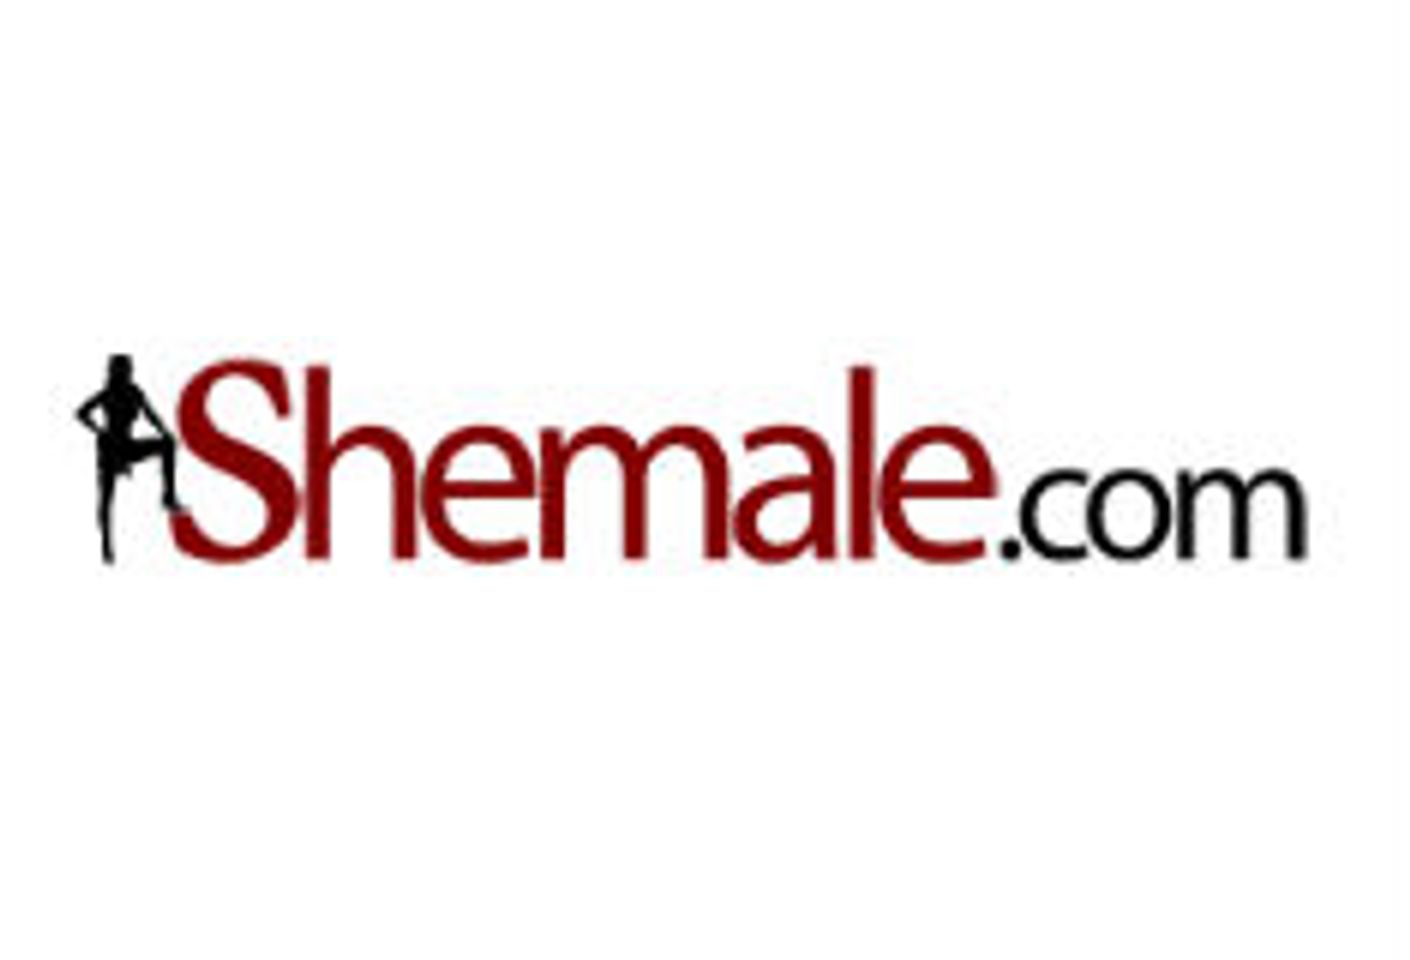 Shemale.com Returns to Sponsor Transgender Erotica Awards